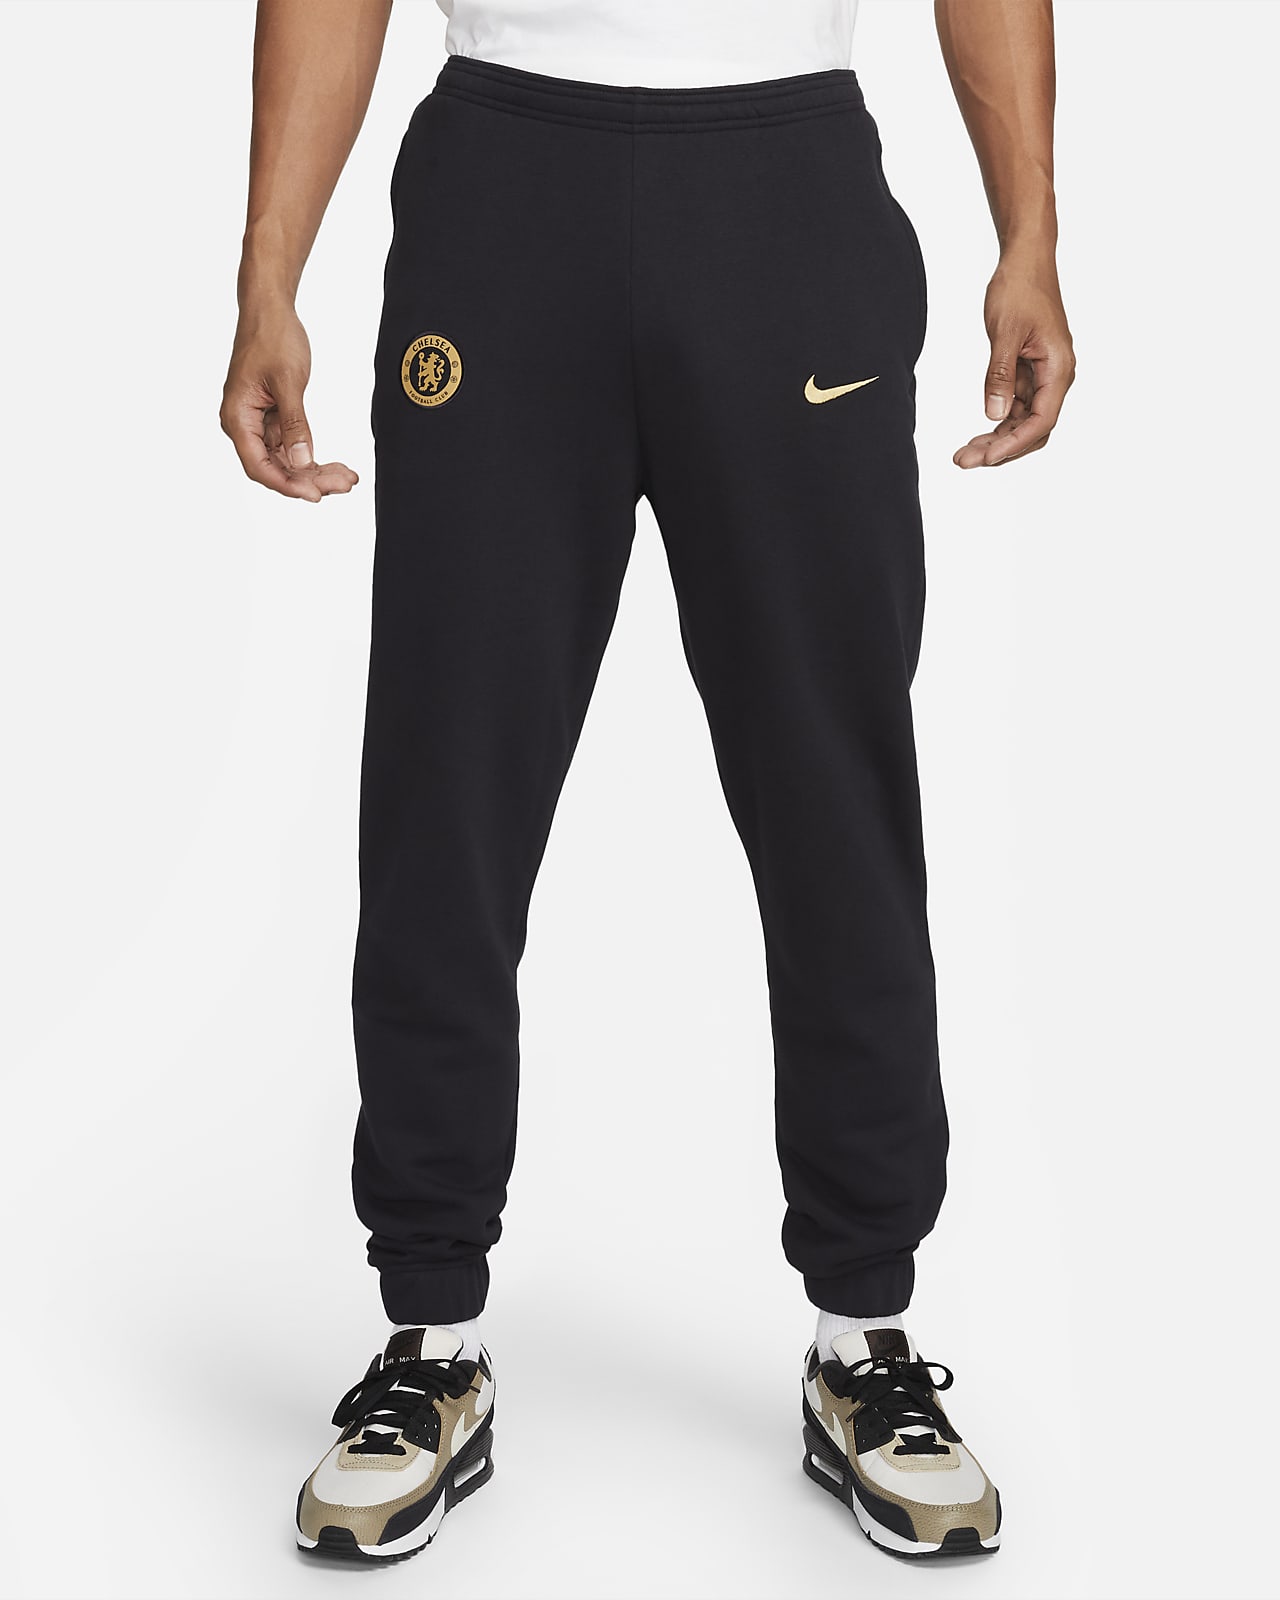 Apariencia oxígeno monstruo Chelsea FC Pantalón de tejido Fleece Nike - Hombre. Nike ES